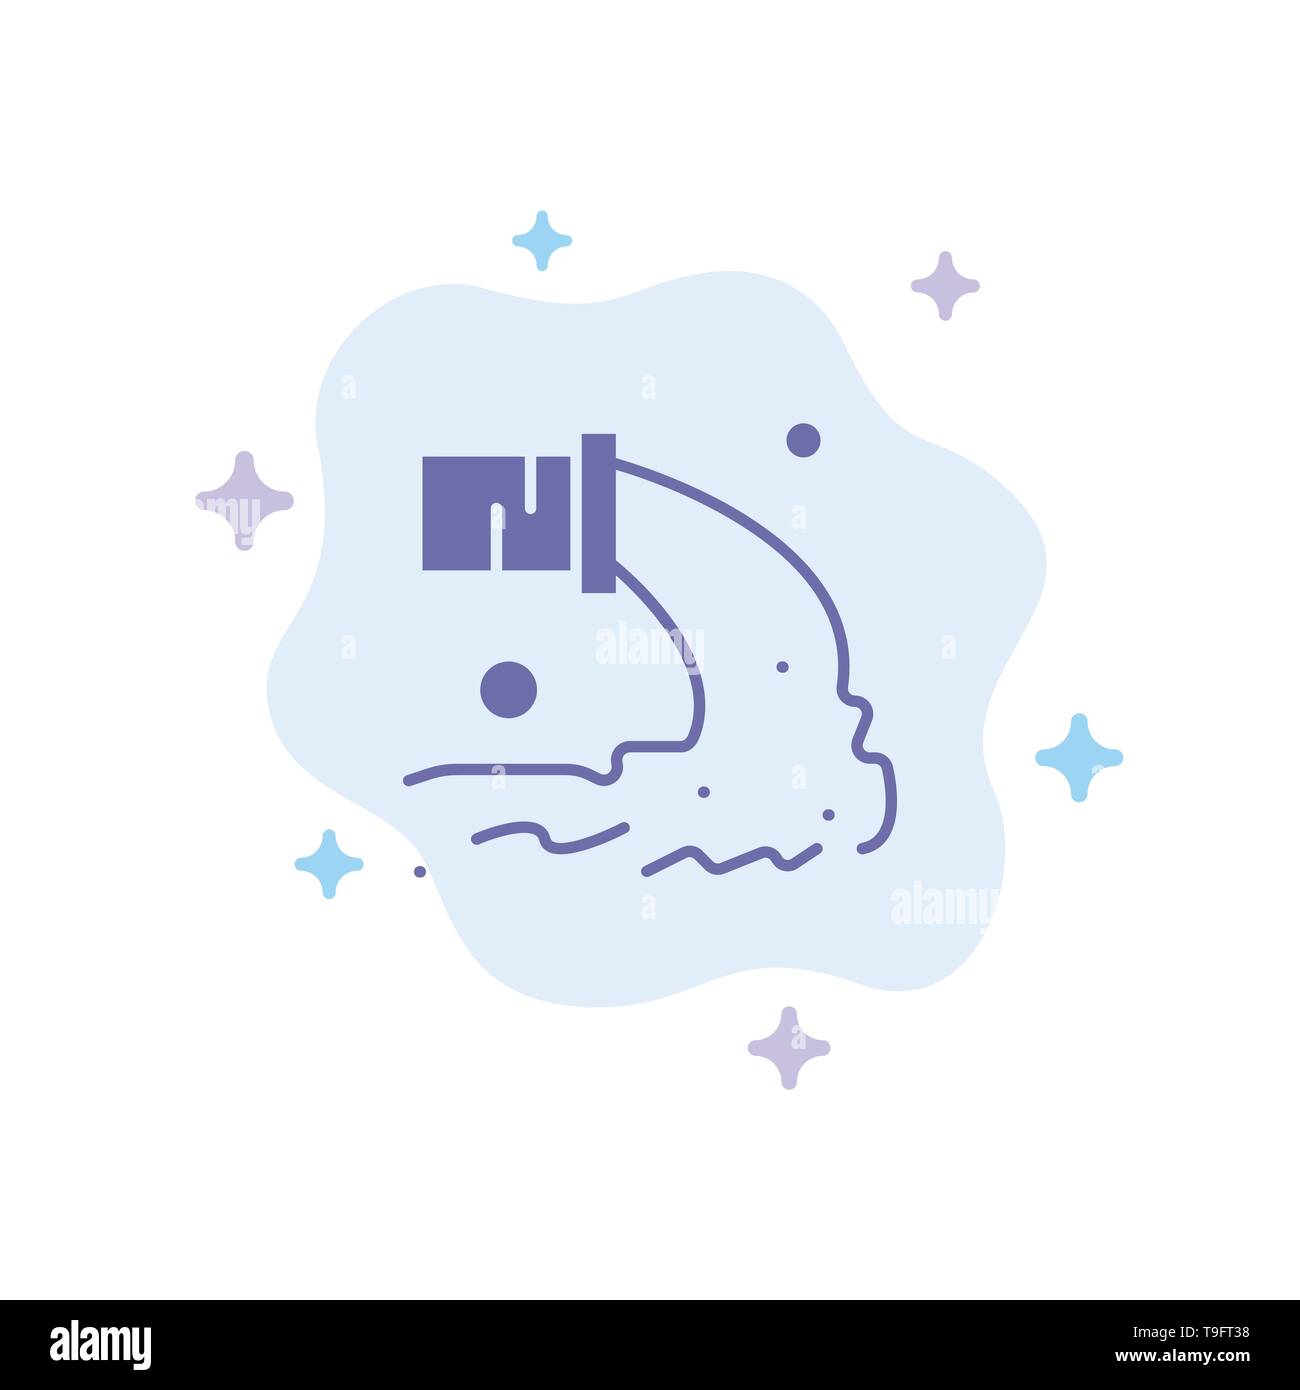 Tuyau, Pollution, eaux usées, déchets radioactifs, icône bleue sur fond de nuage abstrait Illustration de Vecteur